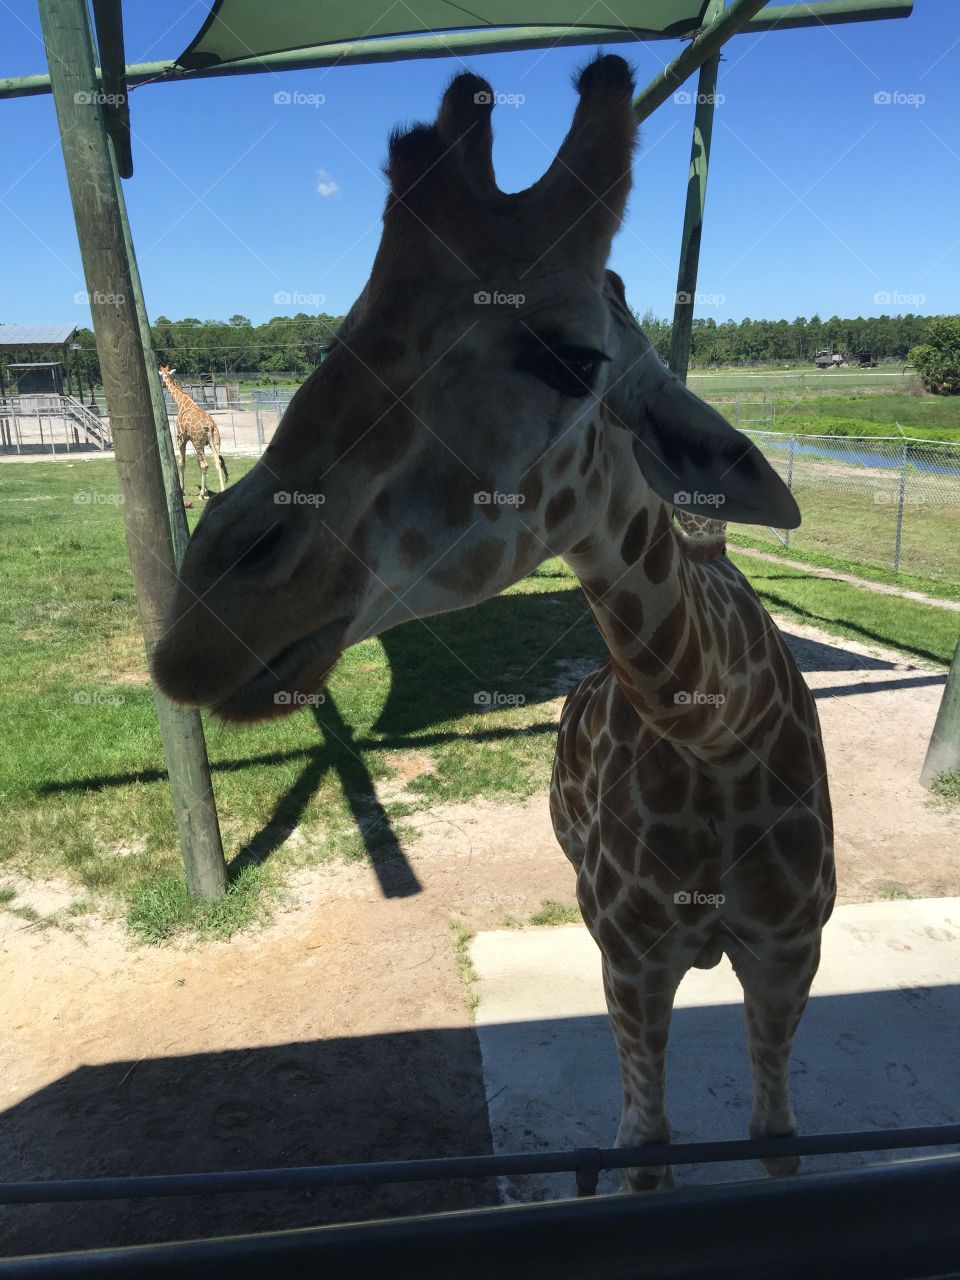 A close up with a giraffe